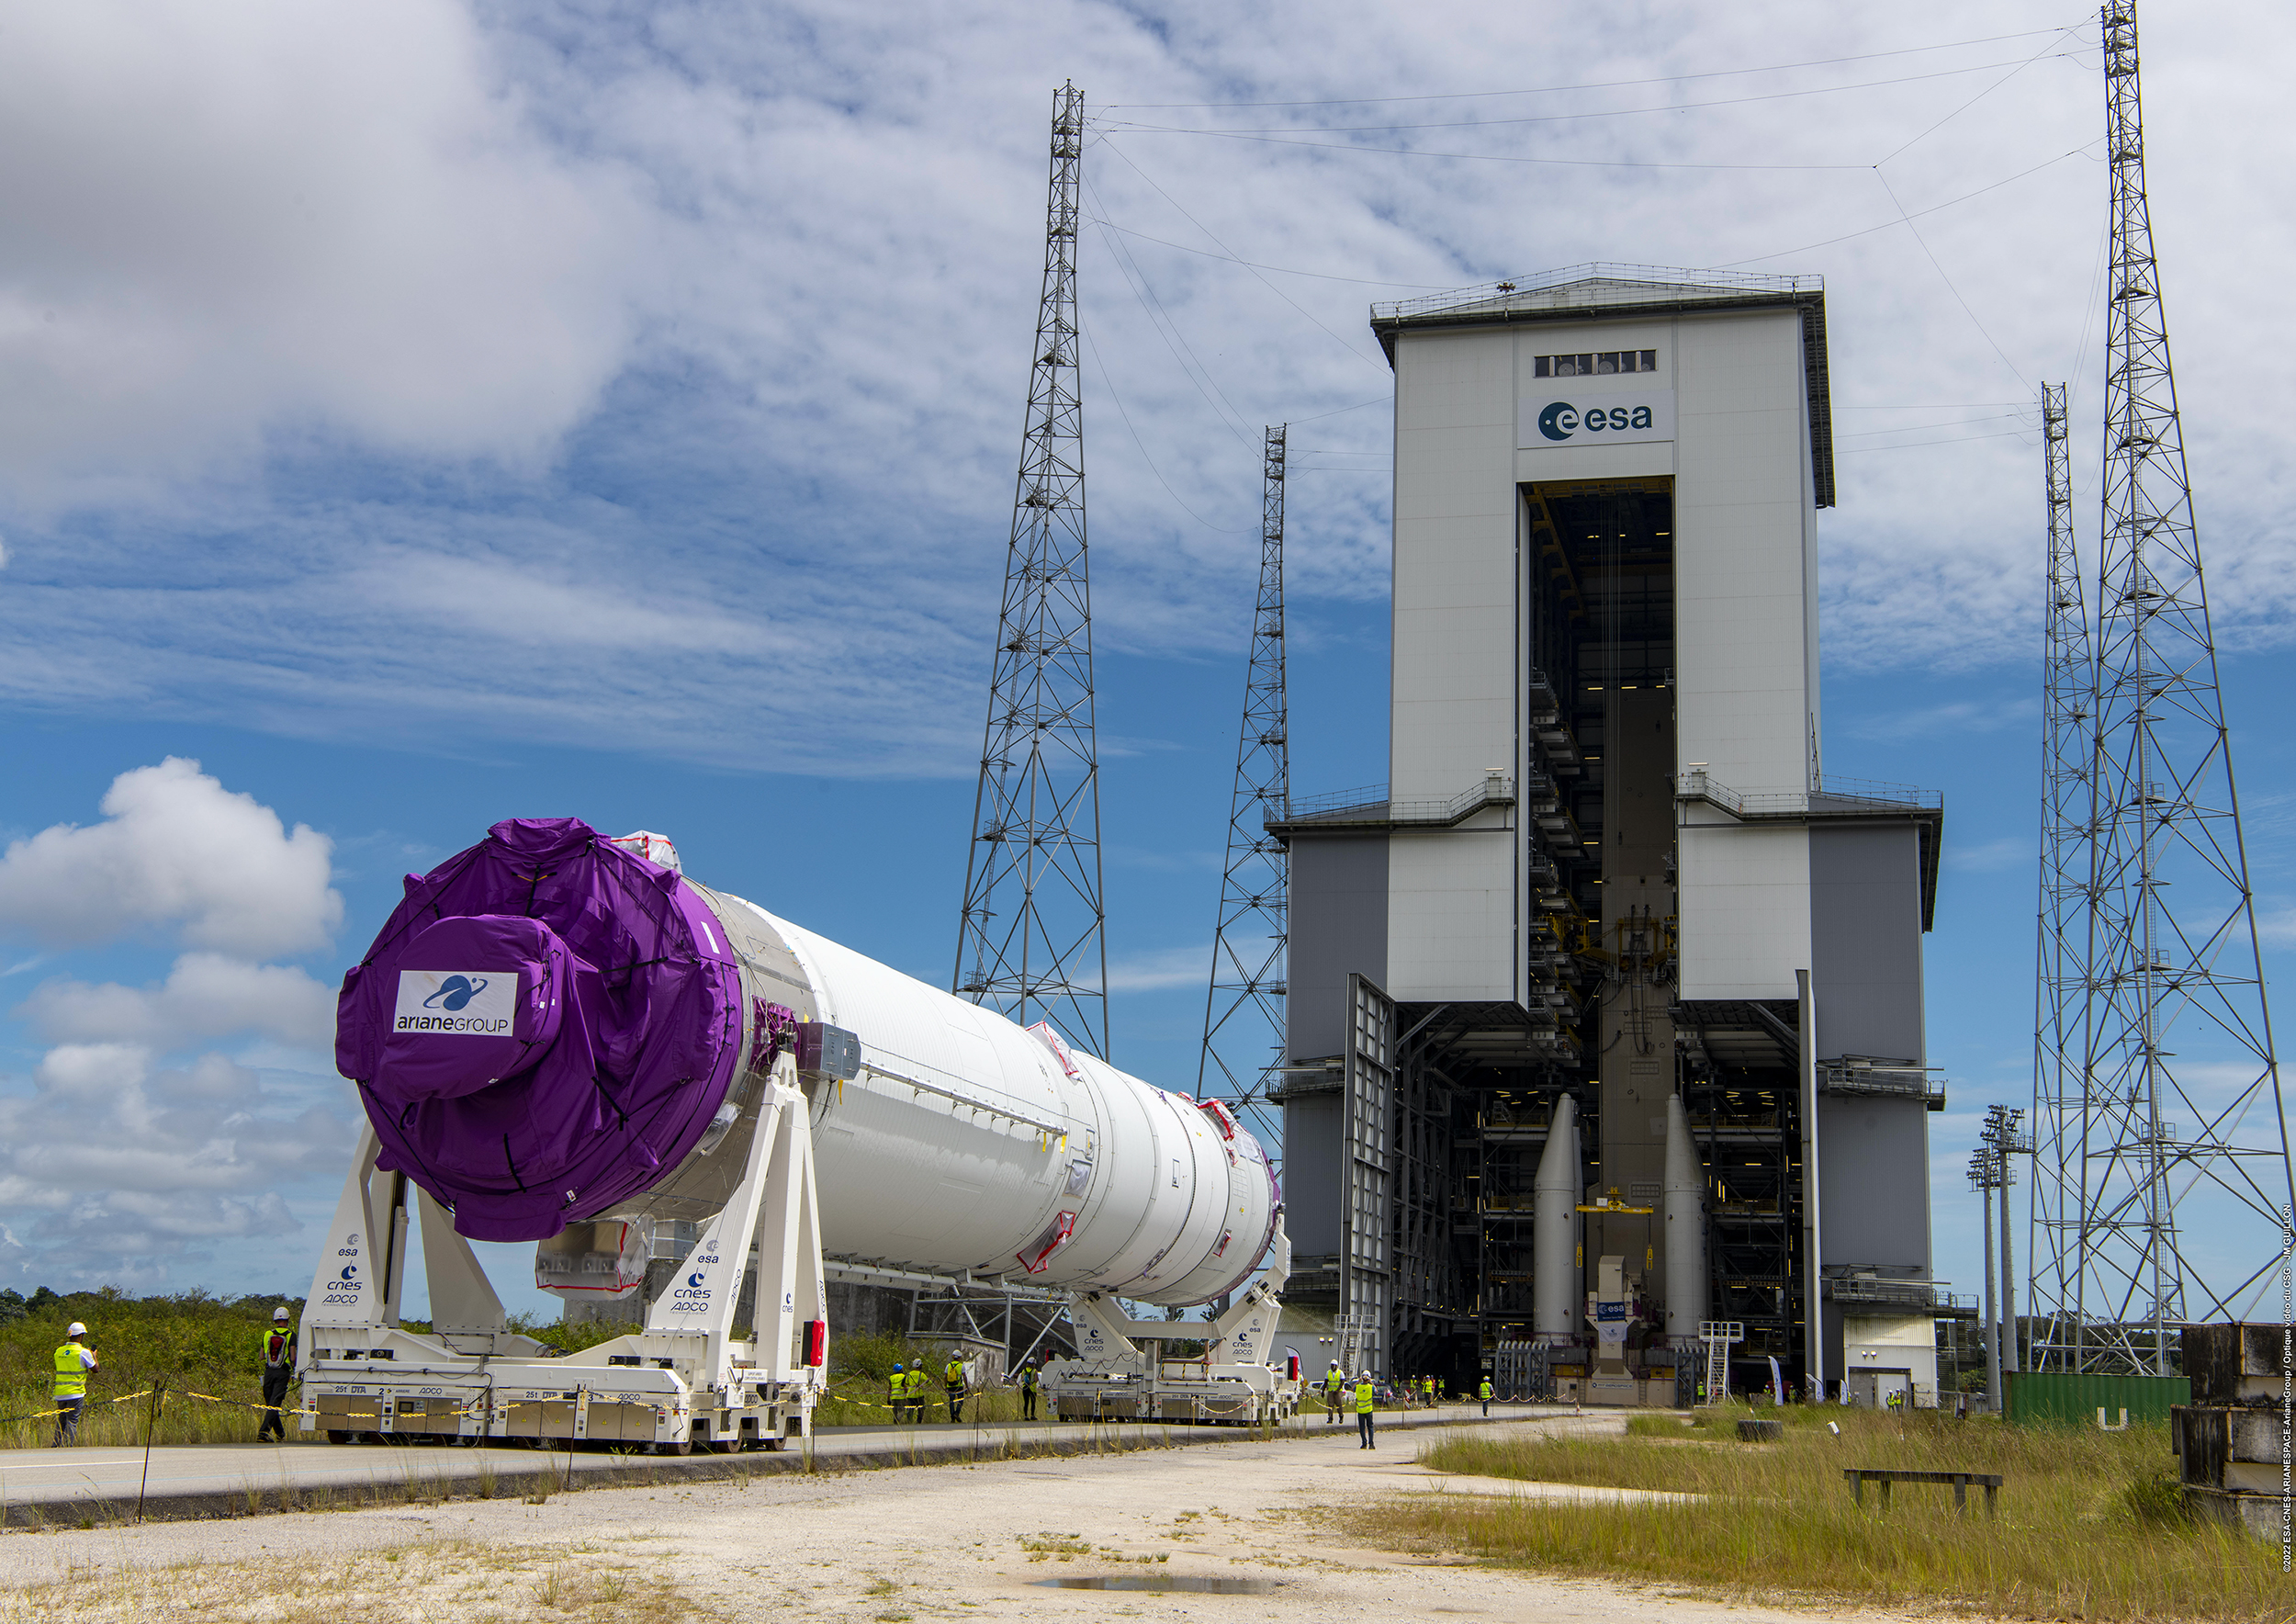 Transfert du&nbsp;corps central d’Ariane 6, composé des deux étages cryogéniques assemblés (principal et supérieur), du Bâtiment d'assemblage lanceur à son pas de tir. Le corps central&nbsp;a roulé sur 800 mètres à l’horizontale pendant une vingtaine de minutes à une vitesse de 3 km/h&nbsp;grâce à quatre véhicules à guidage automatisés.&nbsp;©&nbsp;ESA-Cnes-ArianeGroup-Arianespace-CSG Service Optique